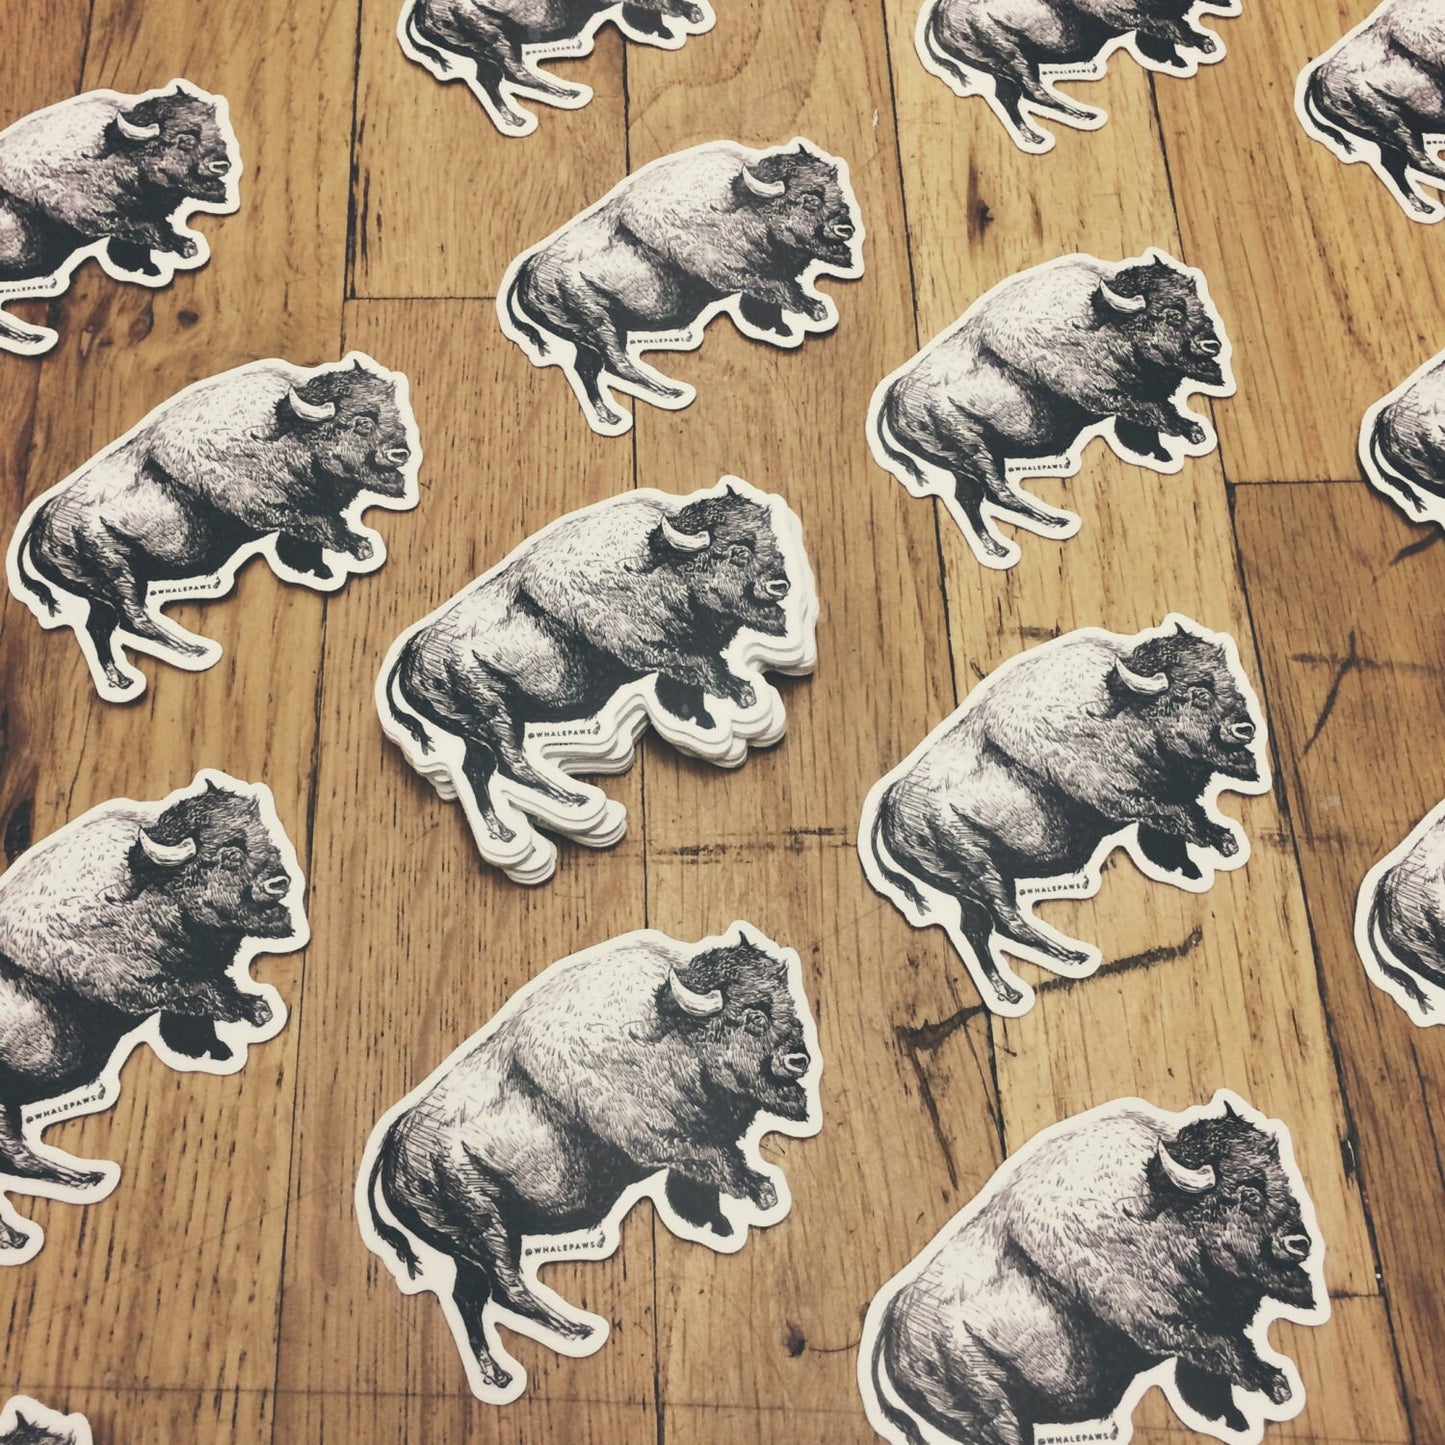 Bison Sticker